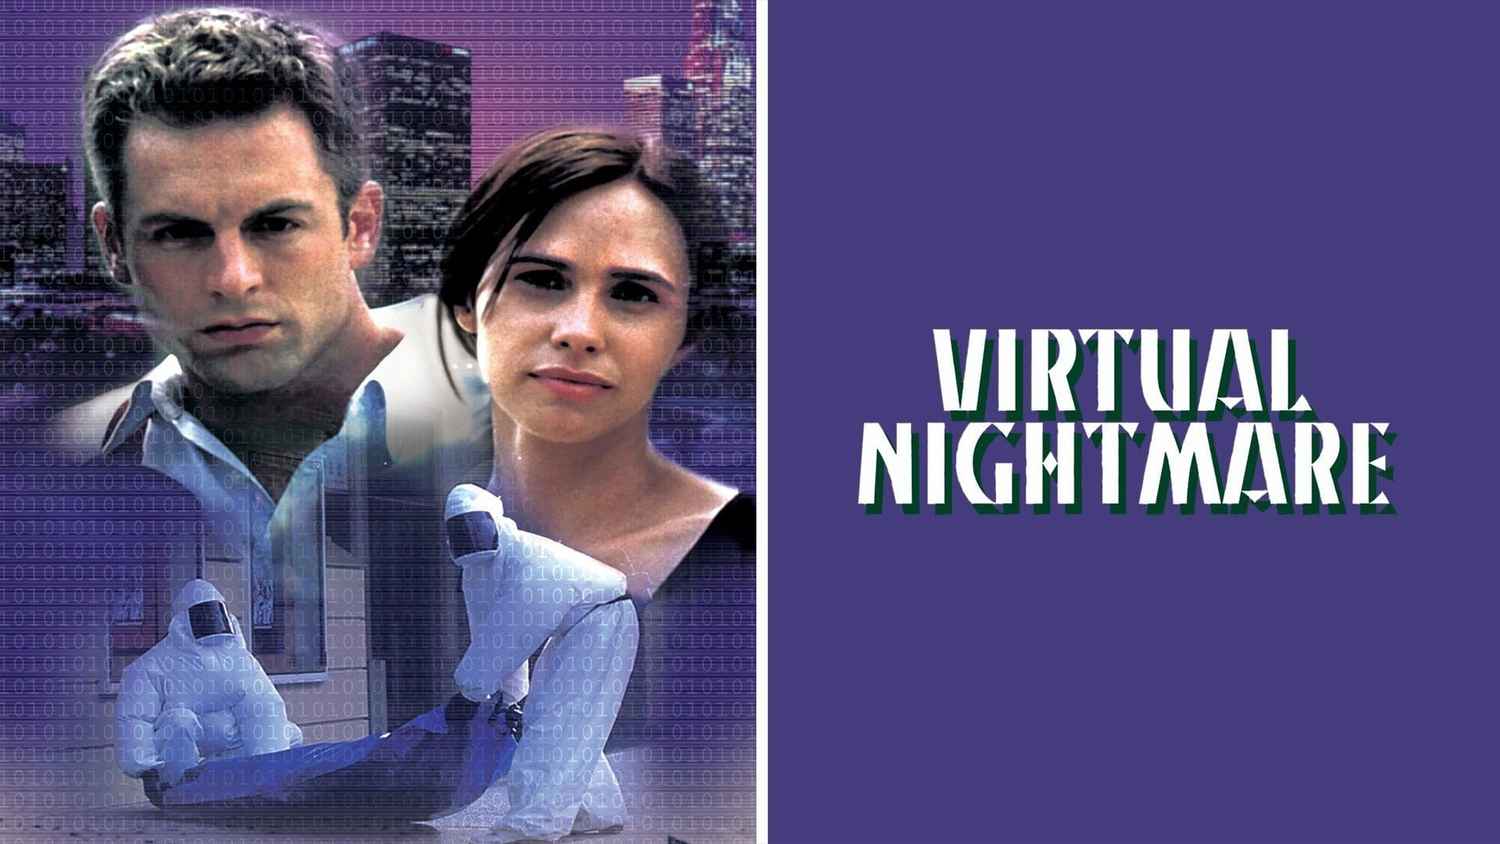 Virtual Nightmare